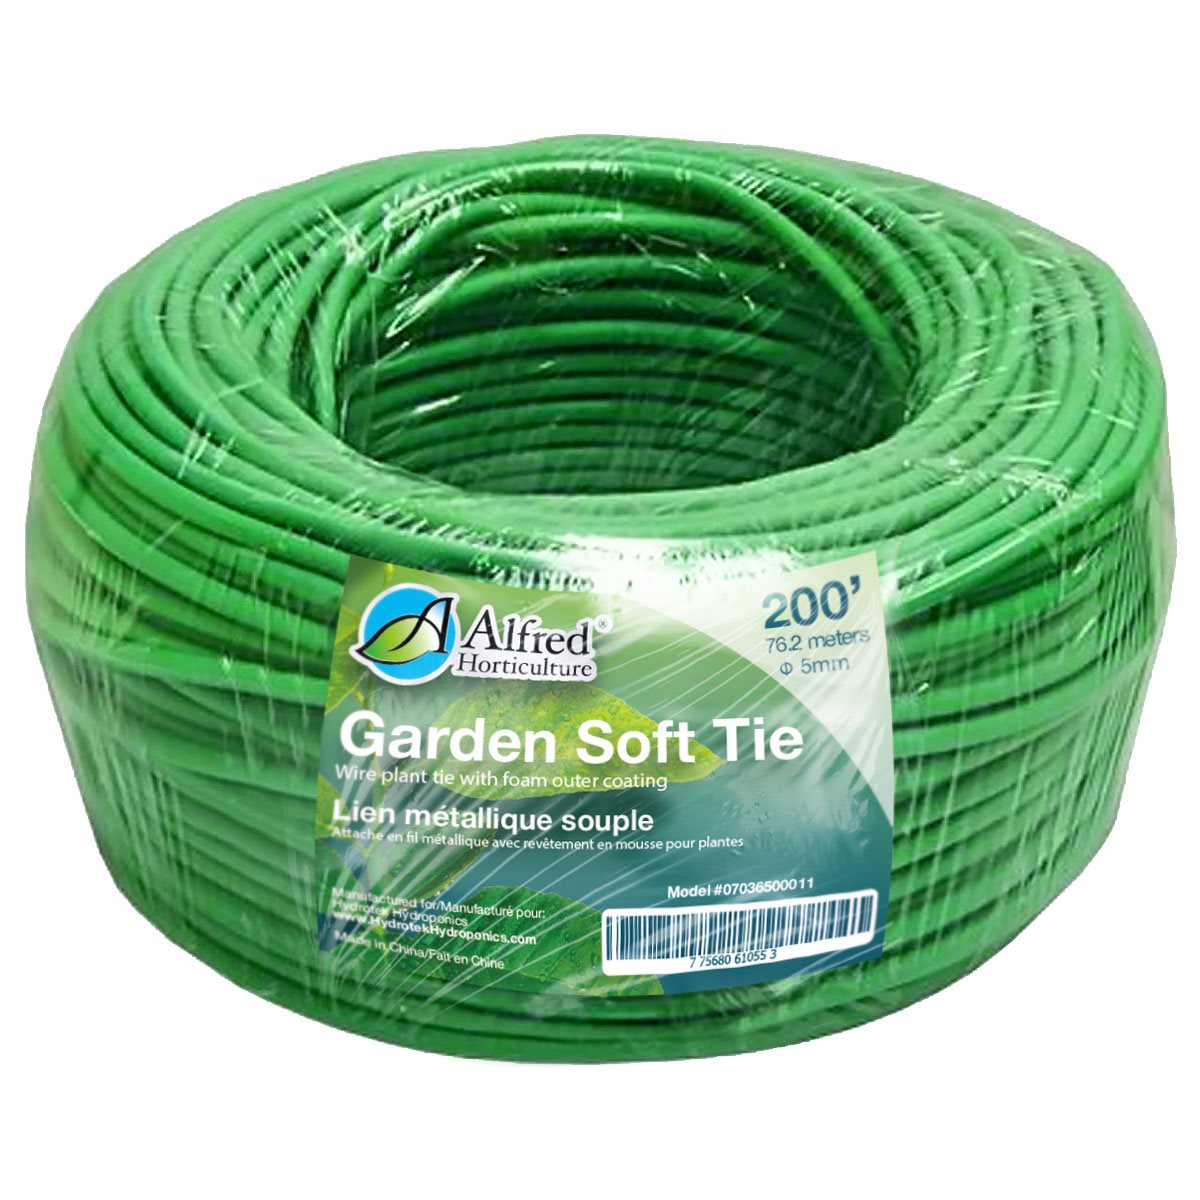 Alfred Garden Soft Tie 200'